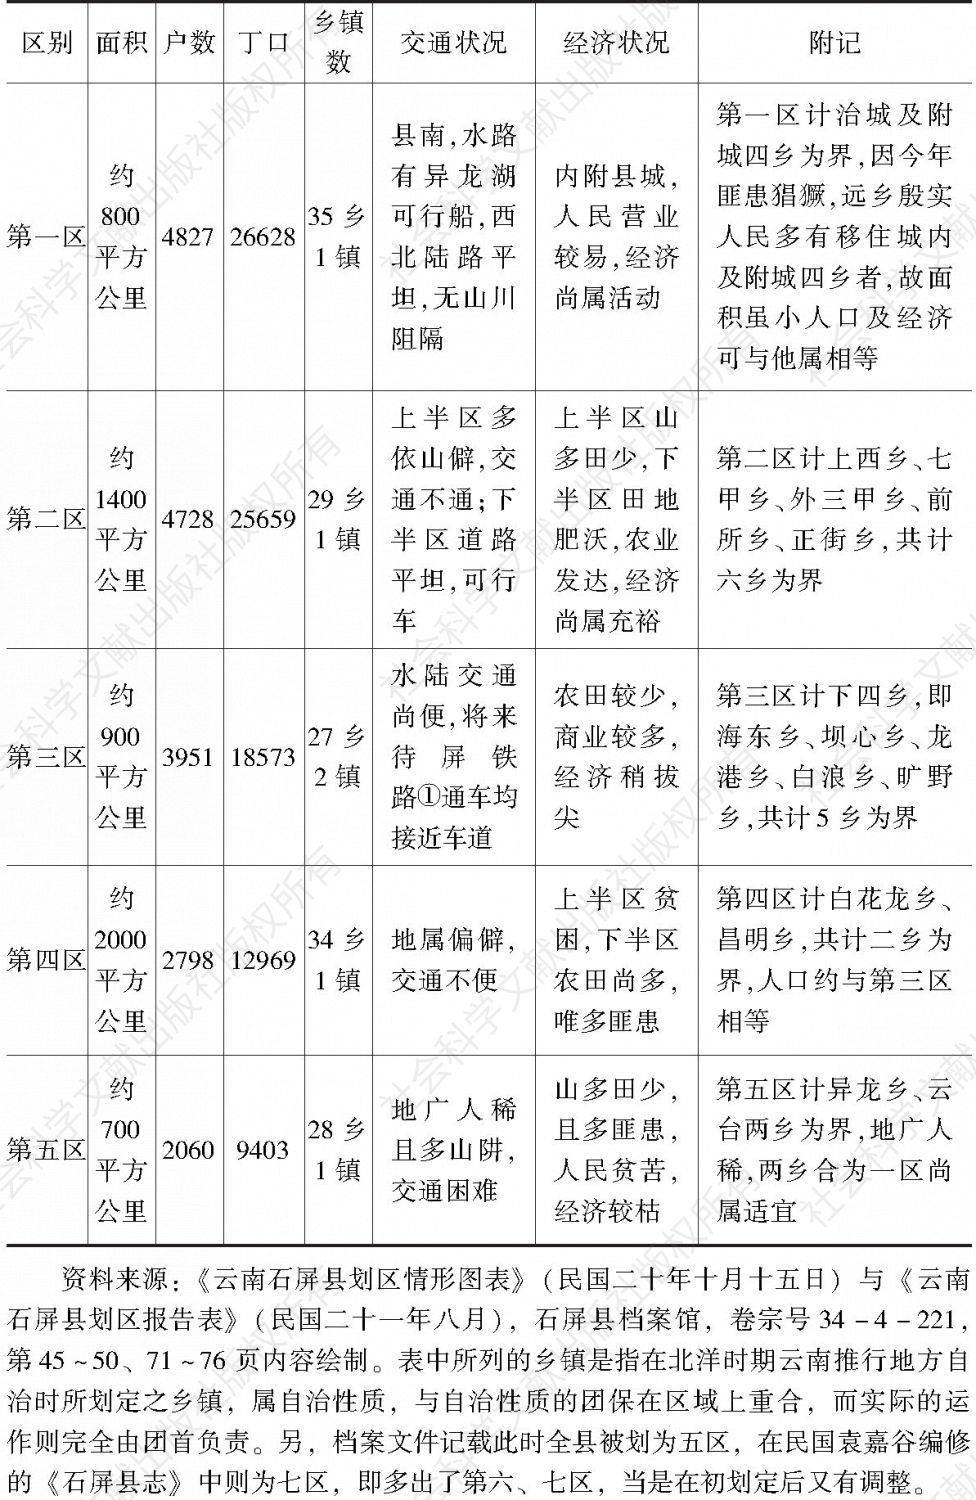 表3-1 1931年石屏县划区及各区状况